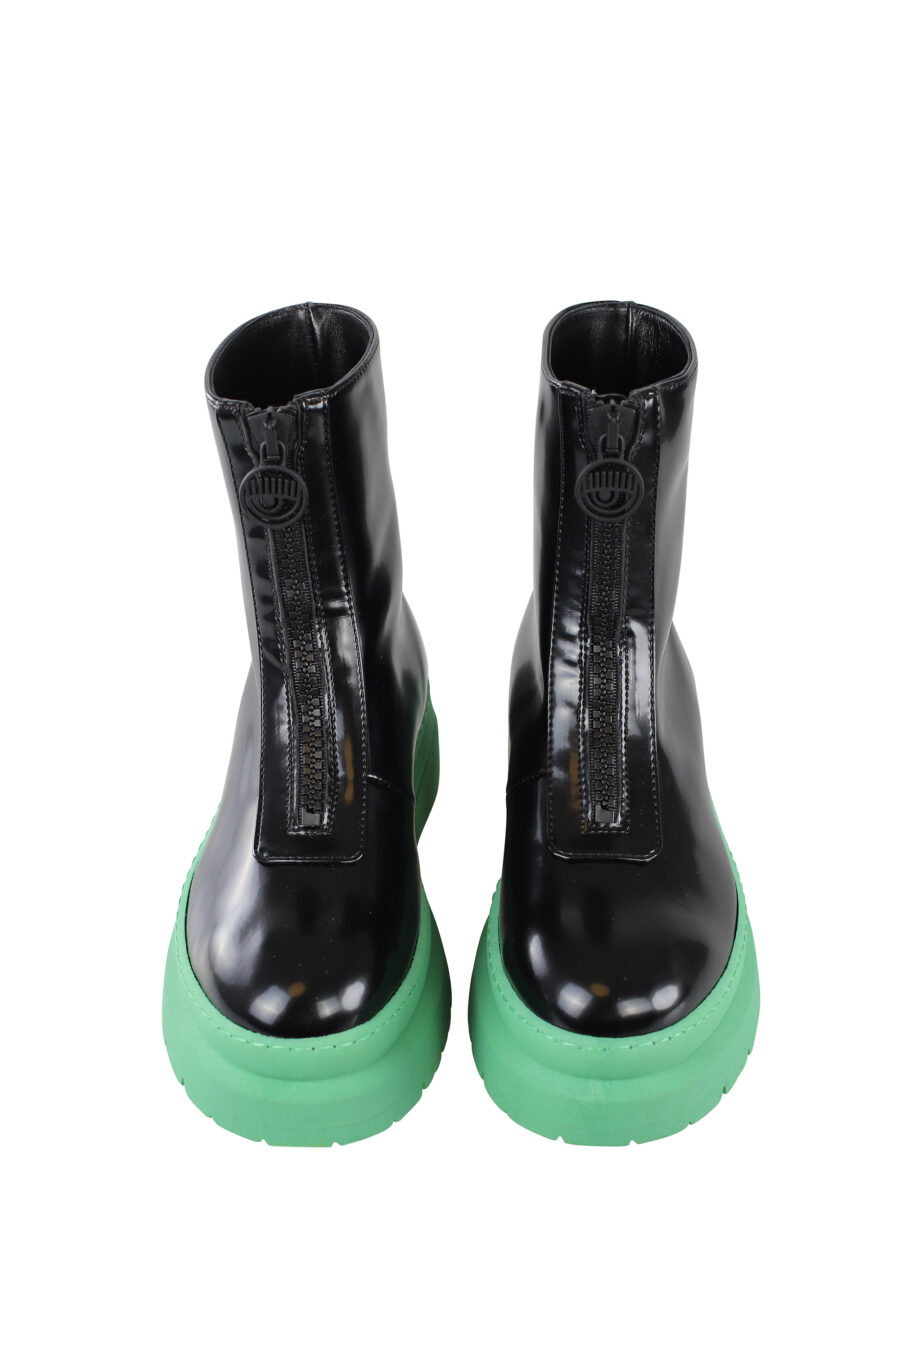 Botines negros de cuero vegano con suela verde - IMG 6687